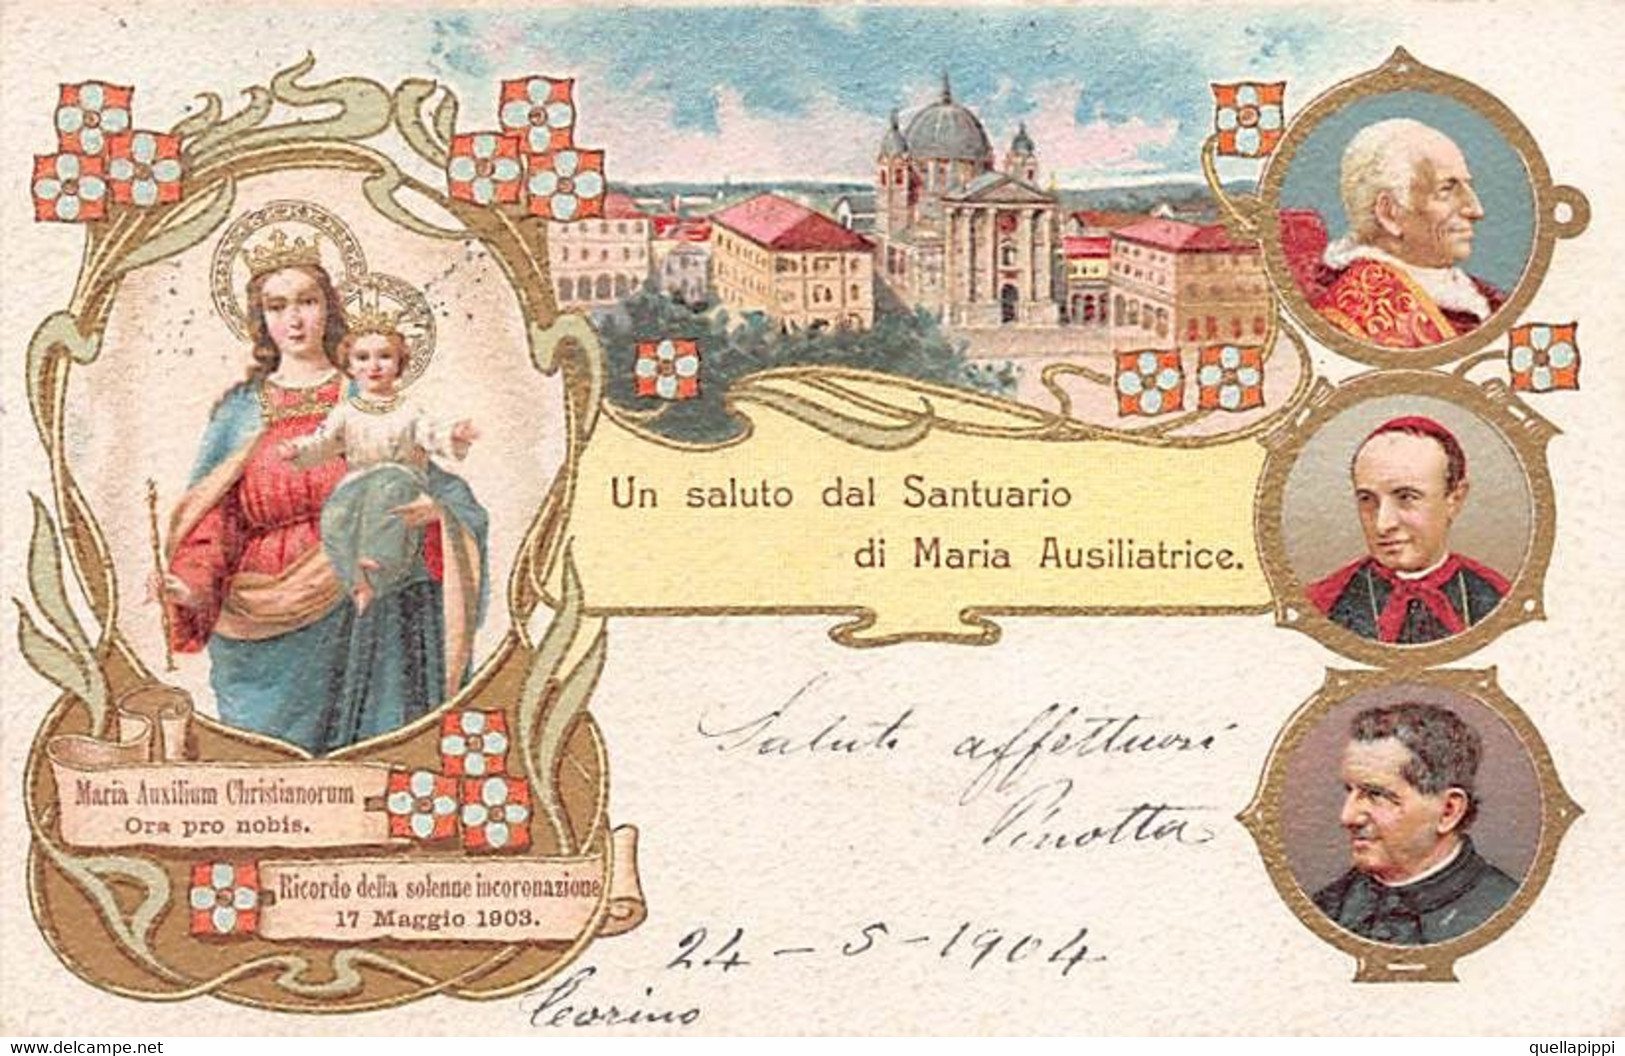 014157 "TORINO - UN SALUTO DAL SANTUARIO DI MARIA AUSILIATRICE" IMMAGINE RELIGIOSA, CART SPED 1904 - Iglesias